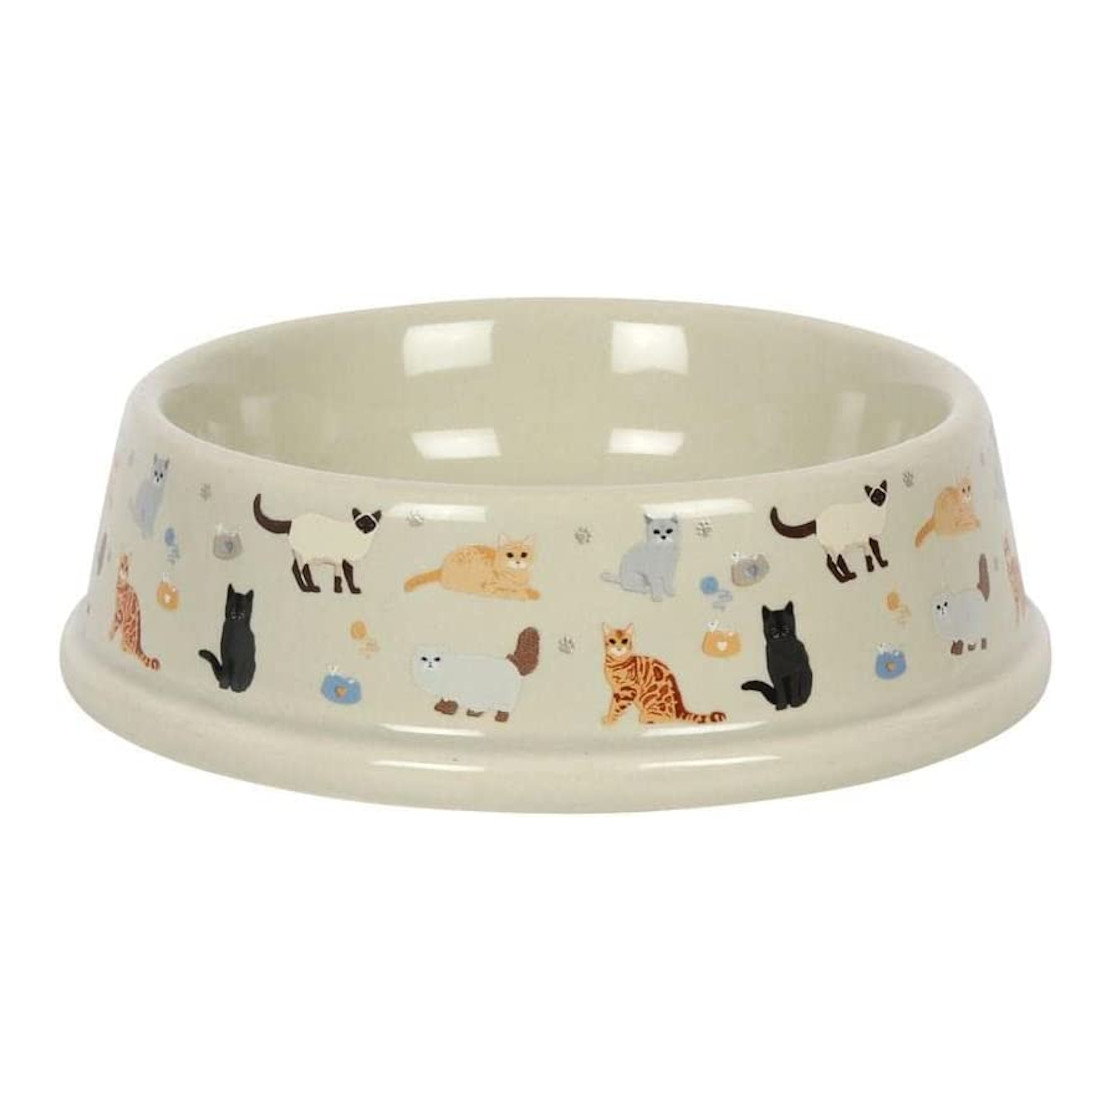 Cat Print Ceramic Food Bowl